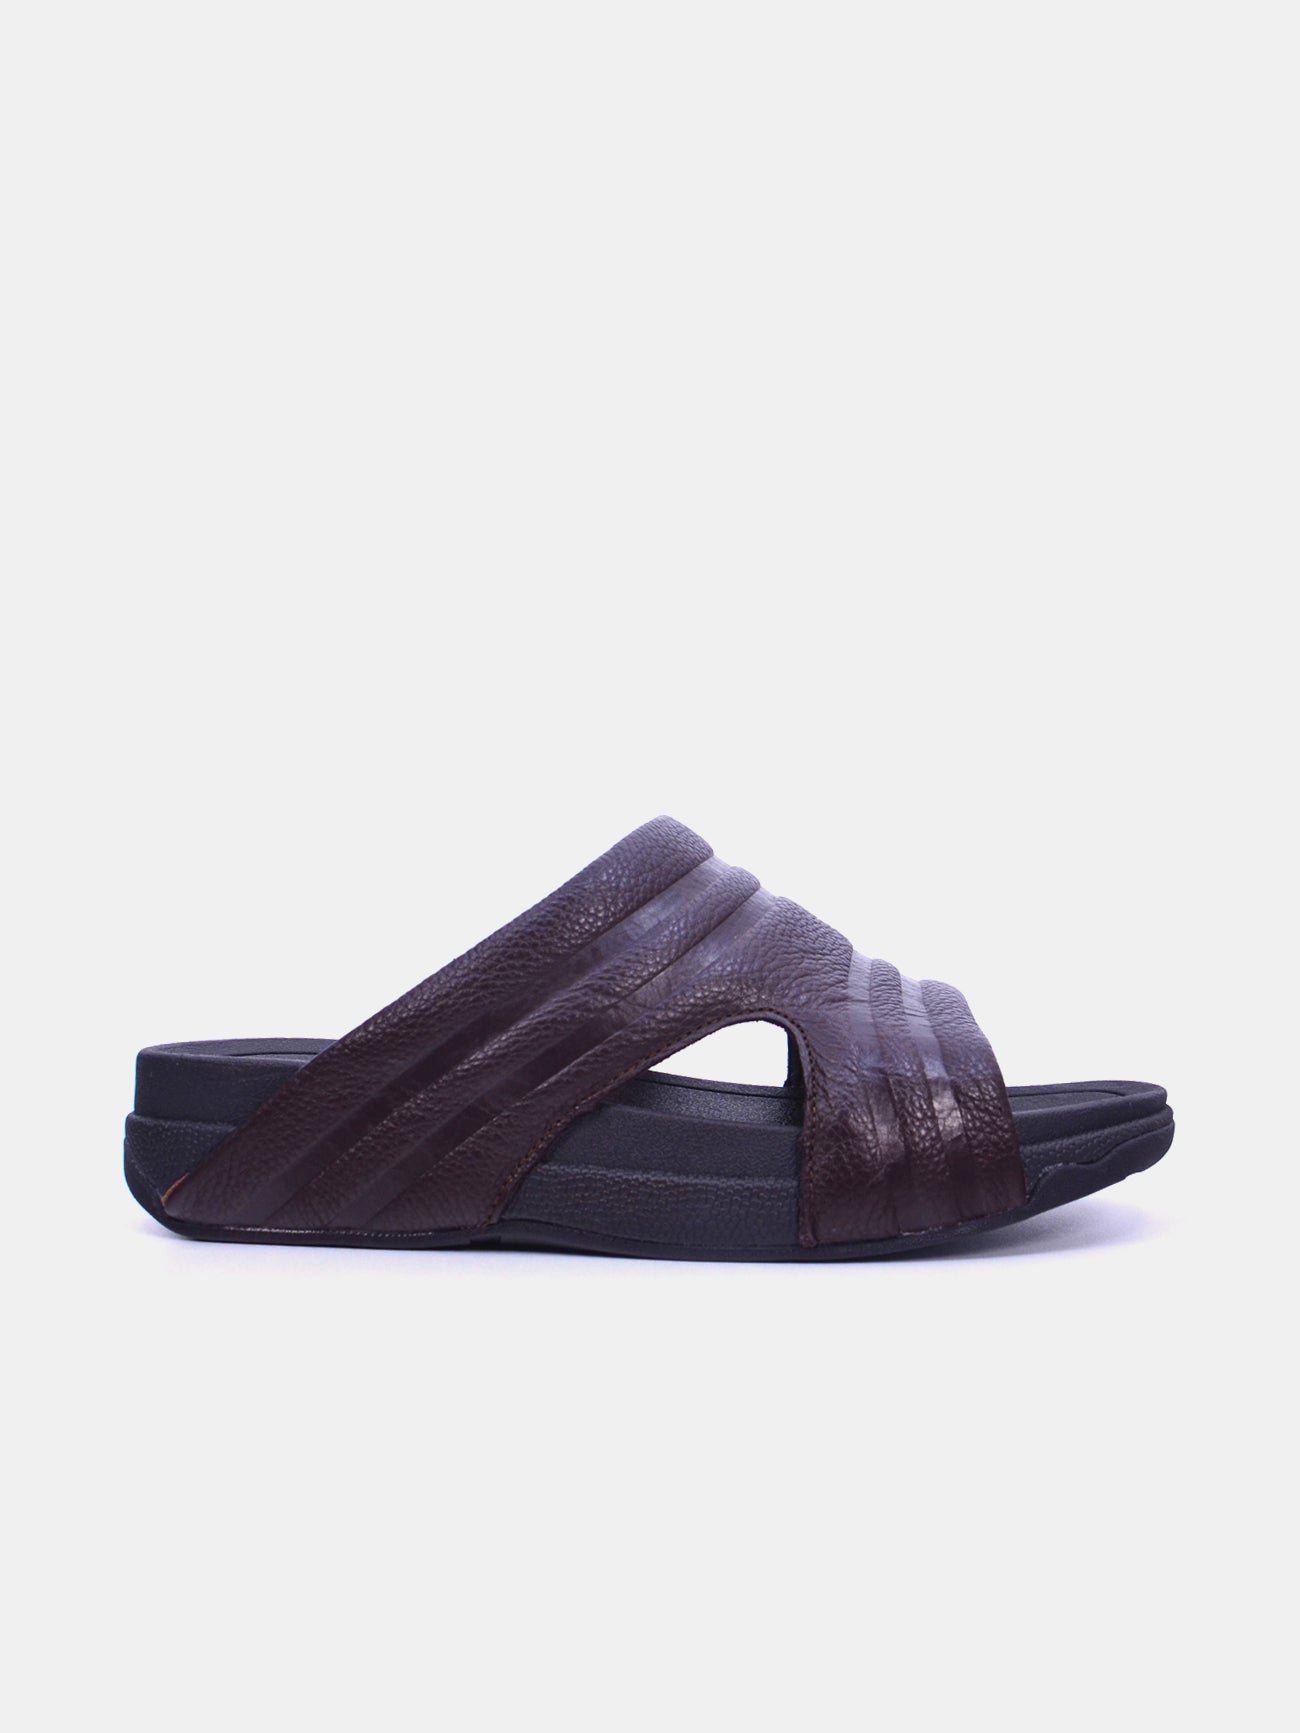 Barjeel Uno 20254 Men's Arabic Sandals #color_Brown